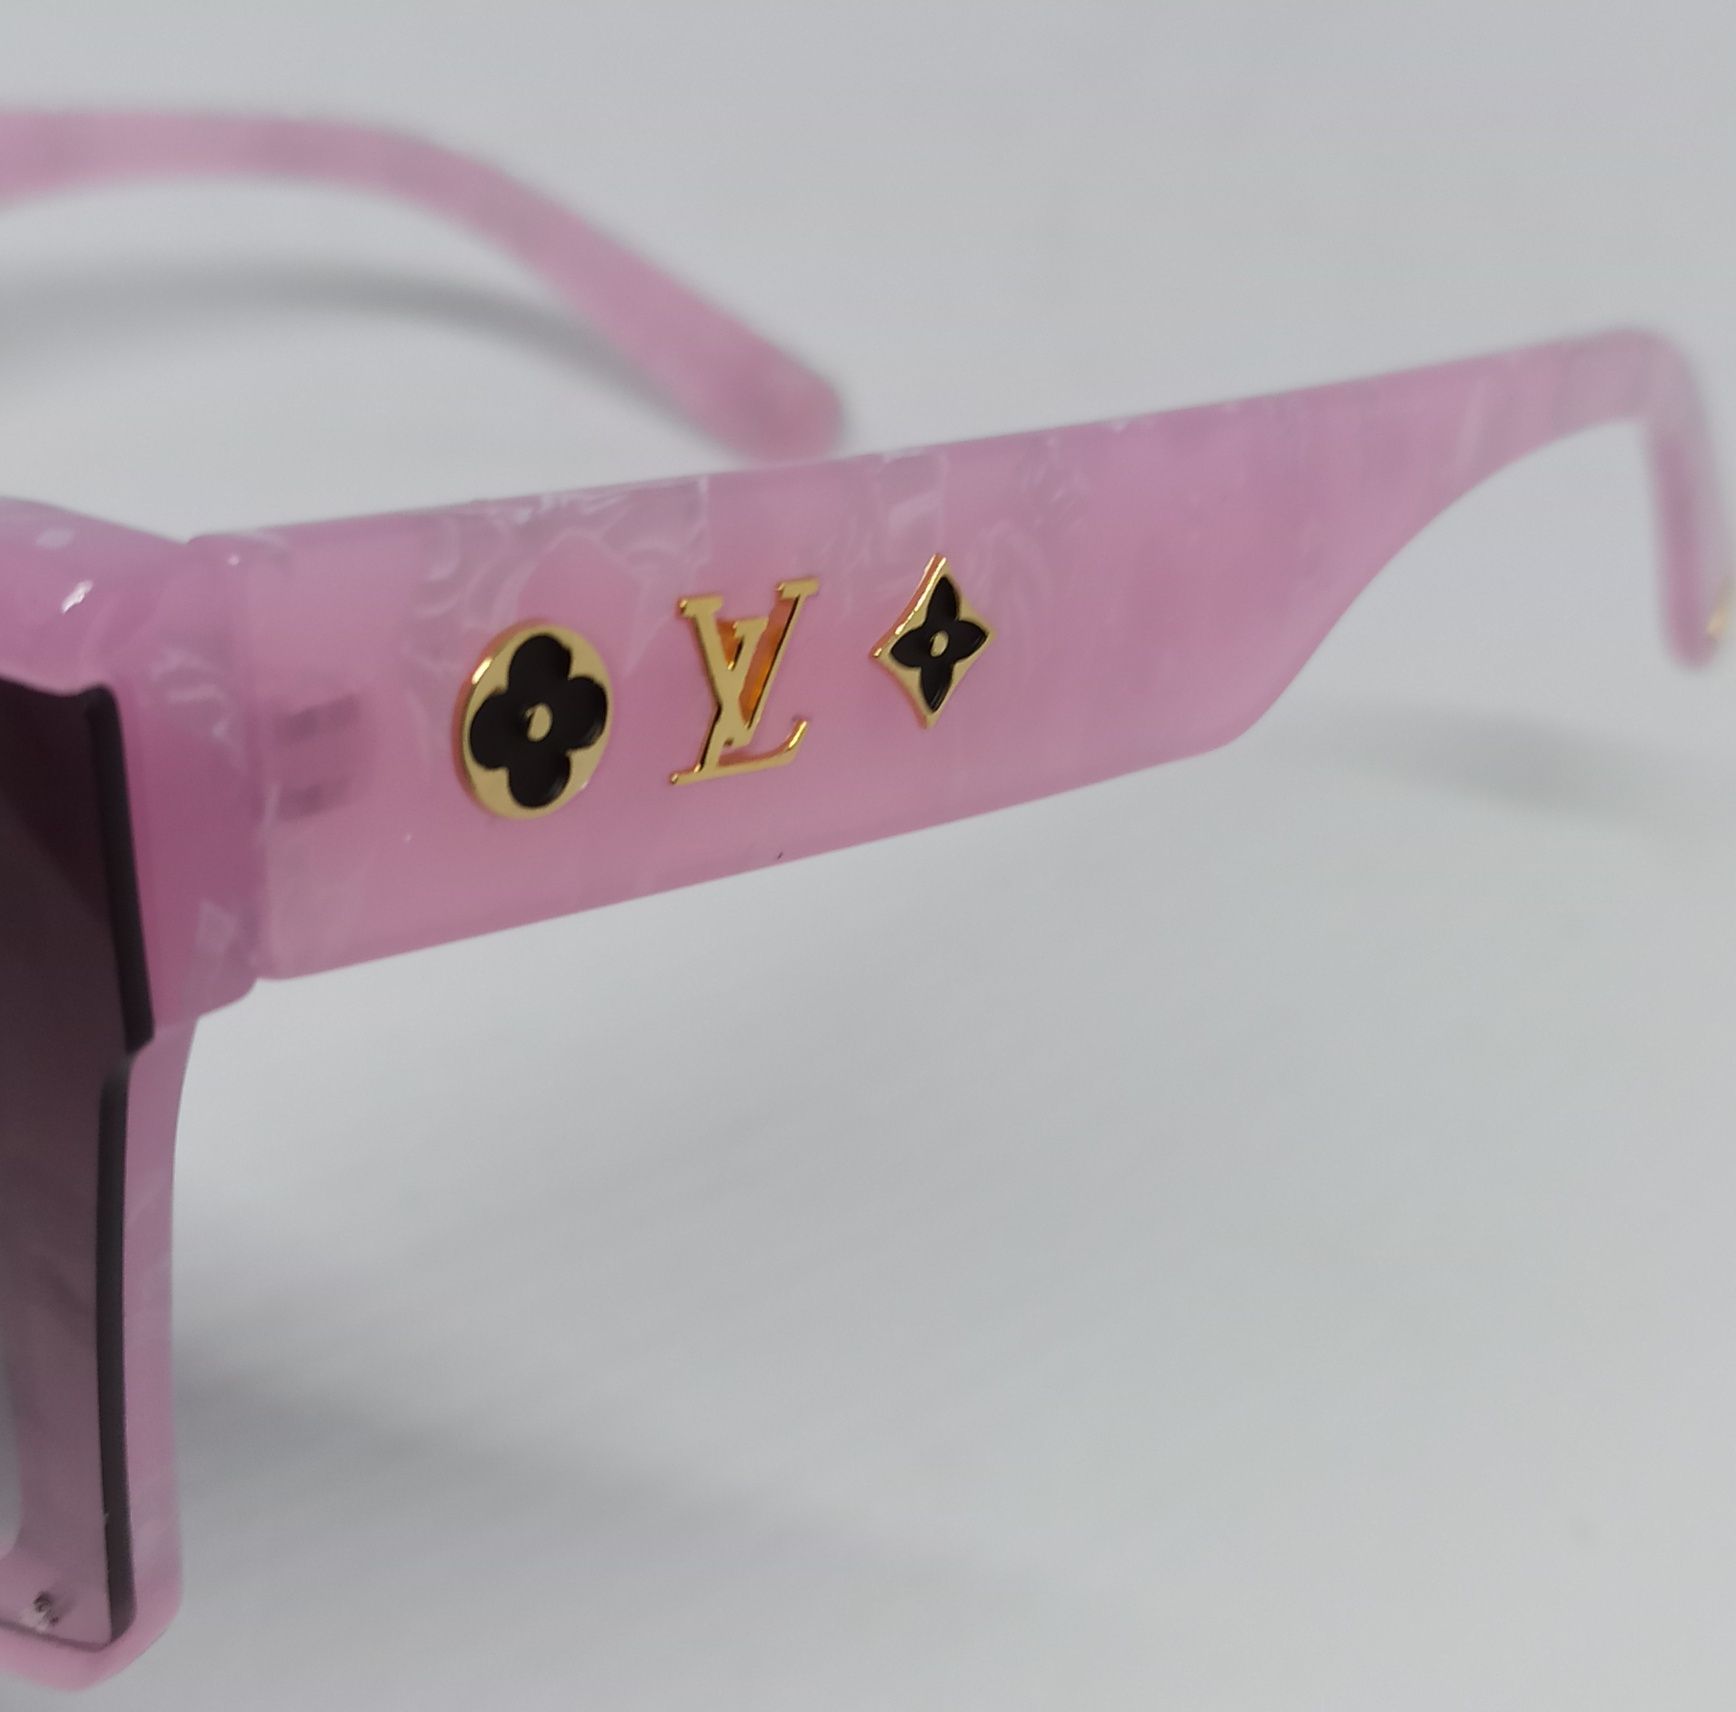 Louis Vuitton очки маска женские серый градиент в розовом мраморе